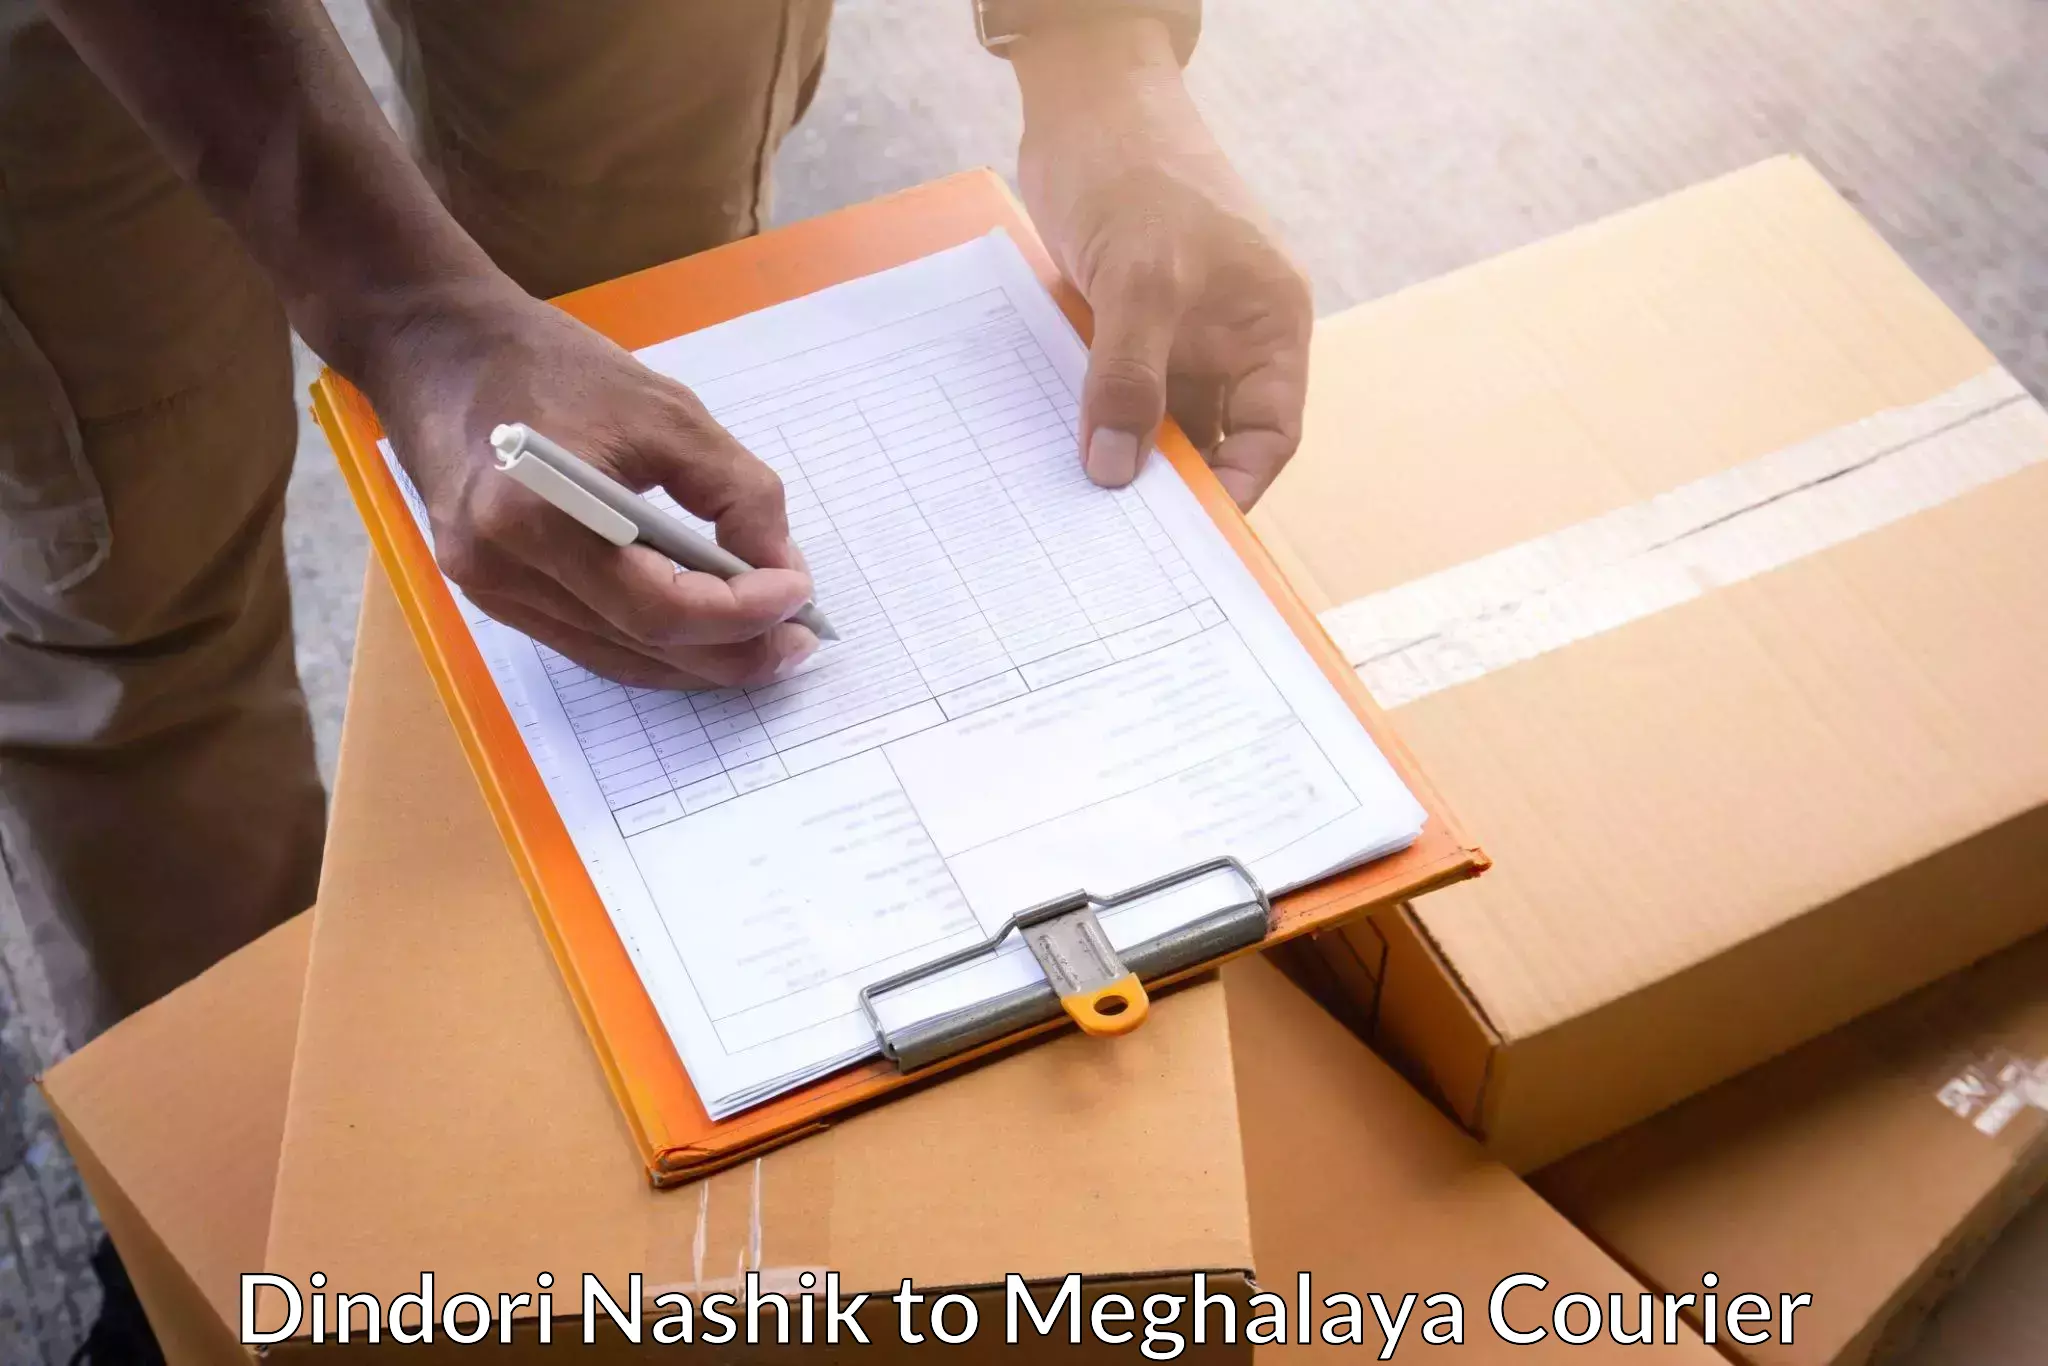 Comprehensive parcel tracking Dindori Nashik to NIT Meghalaya